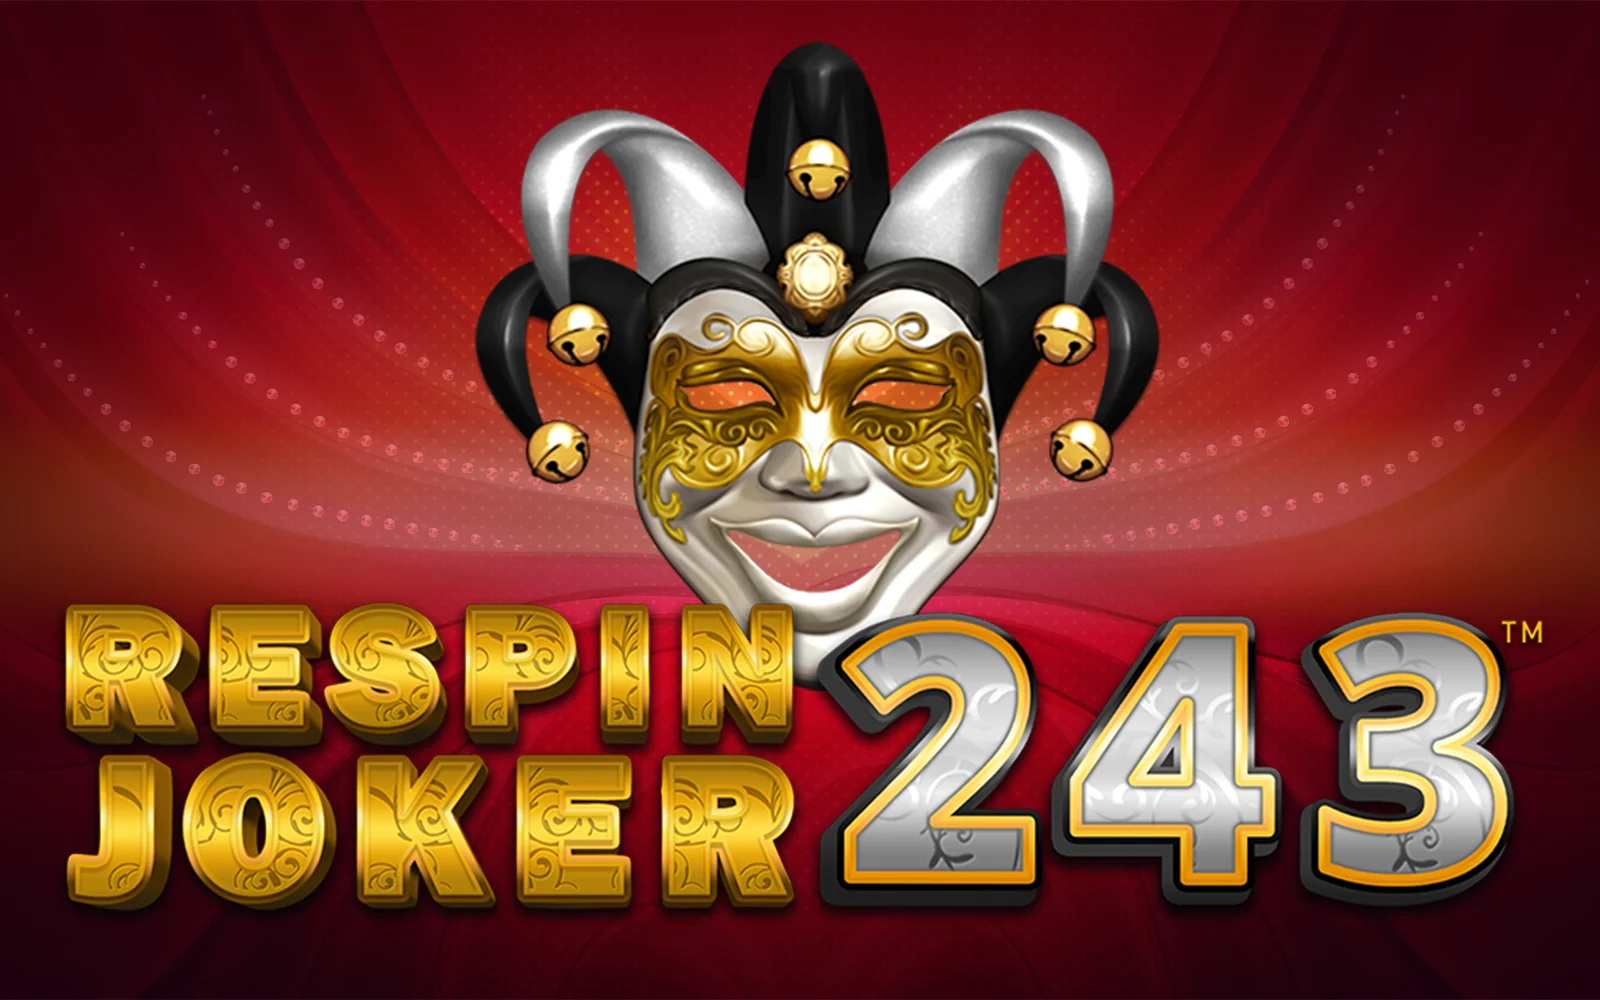 Play Respin Joker 243 on Starcasino.be online casino